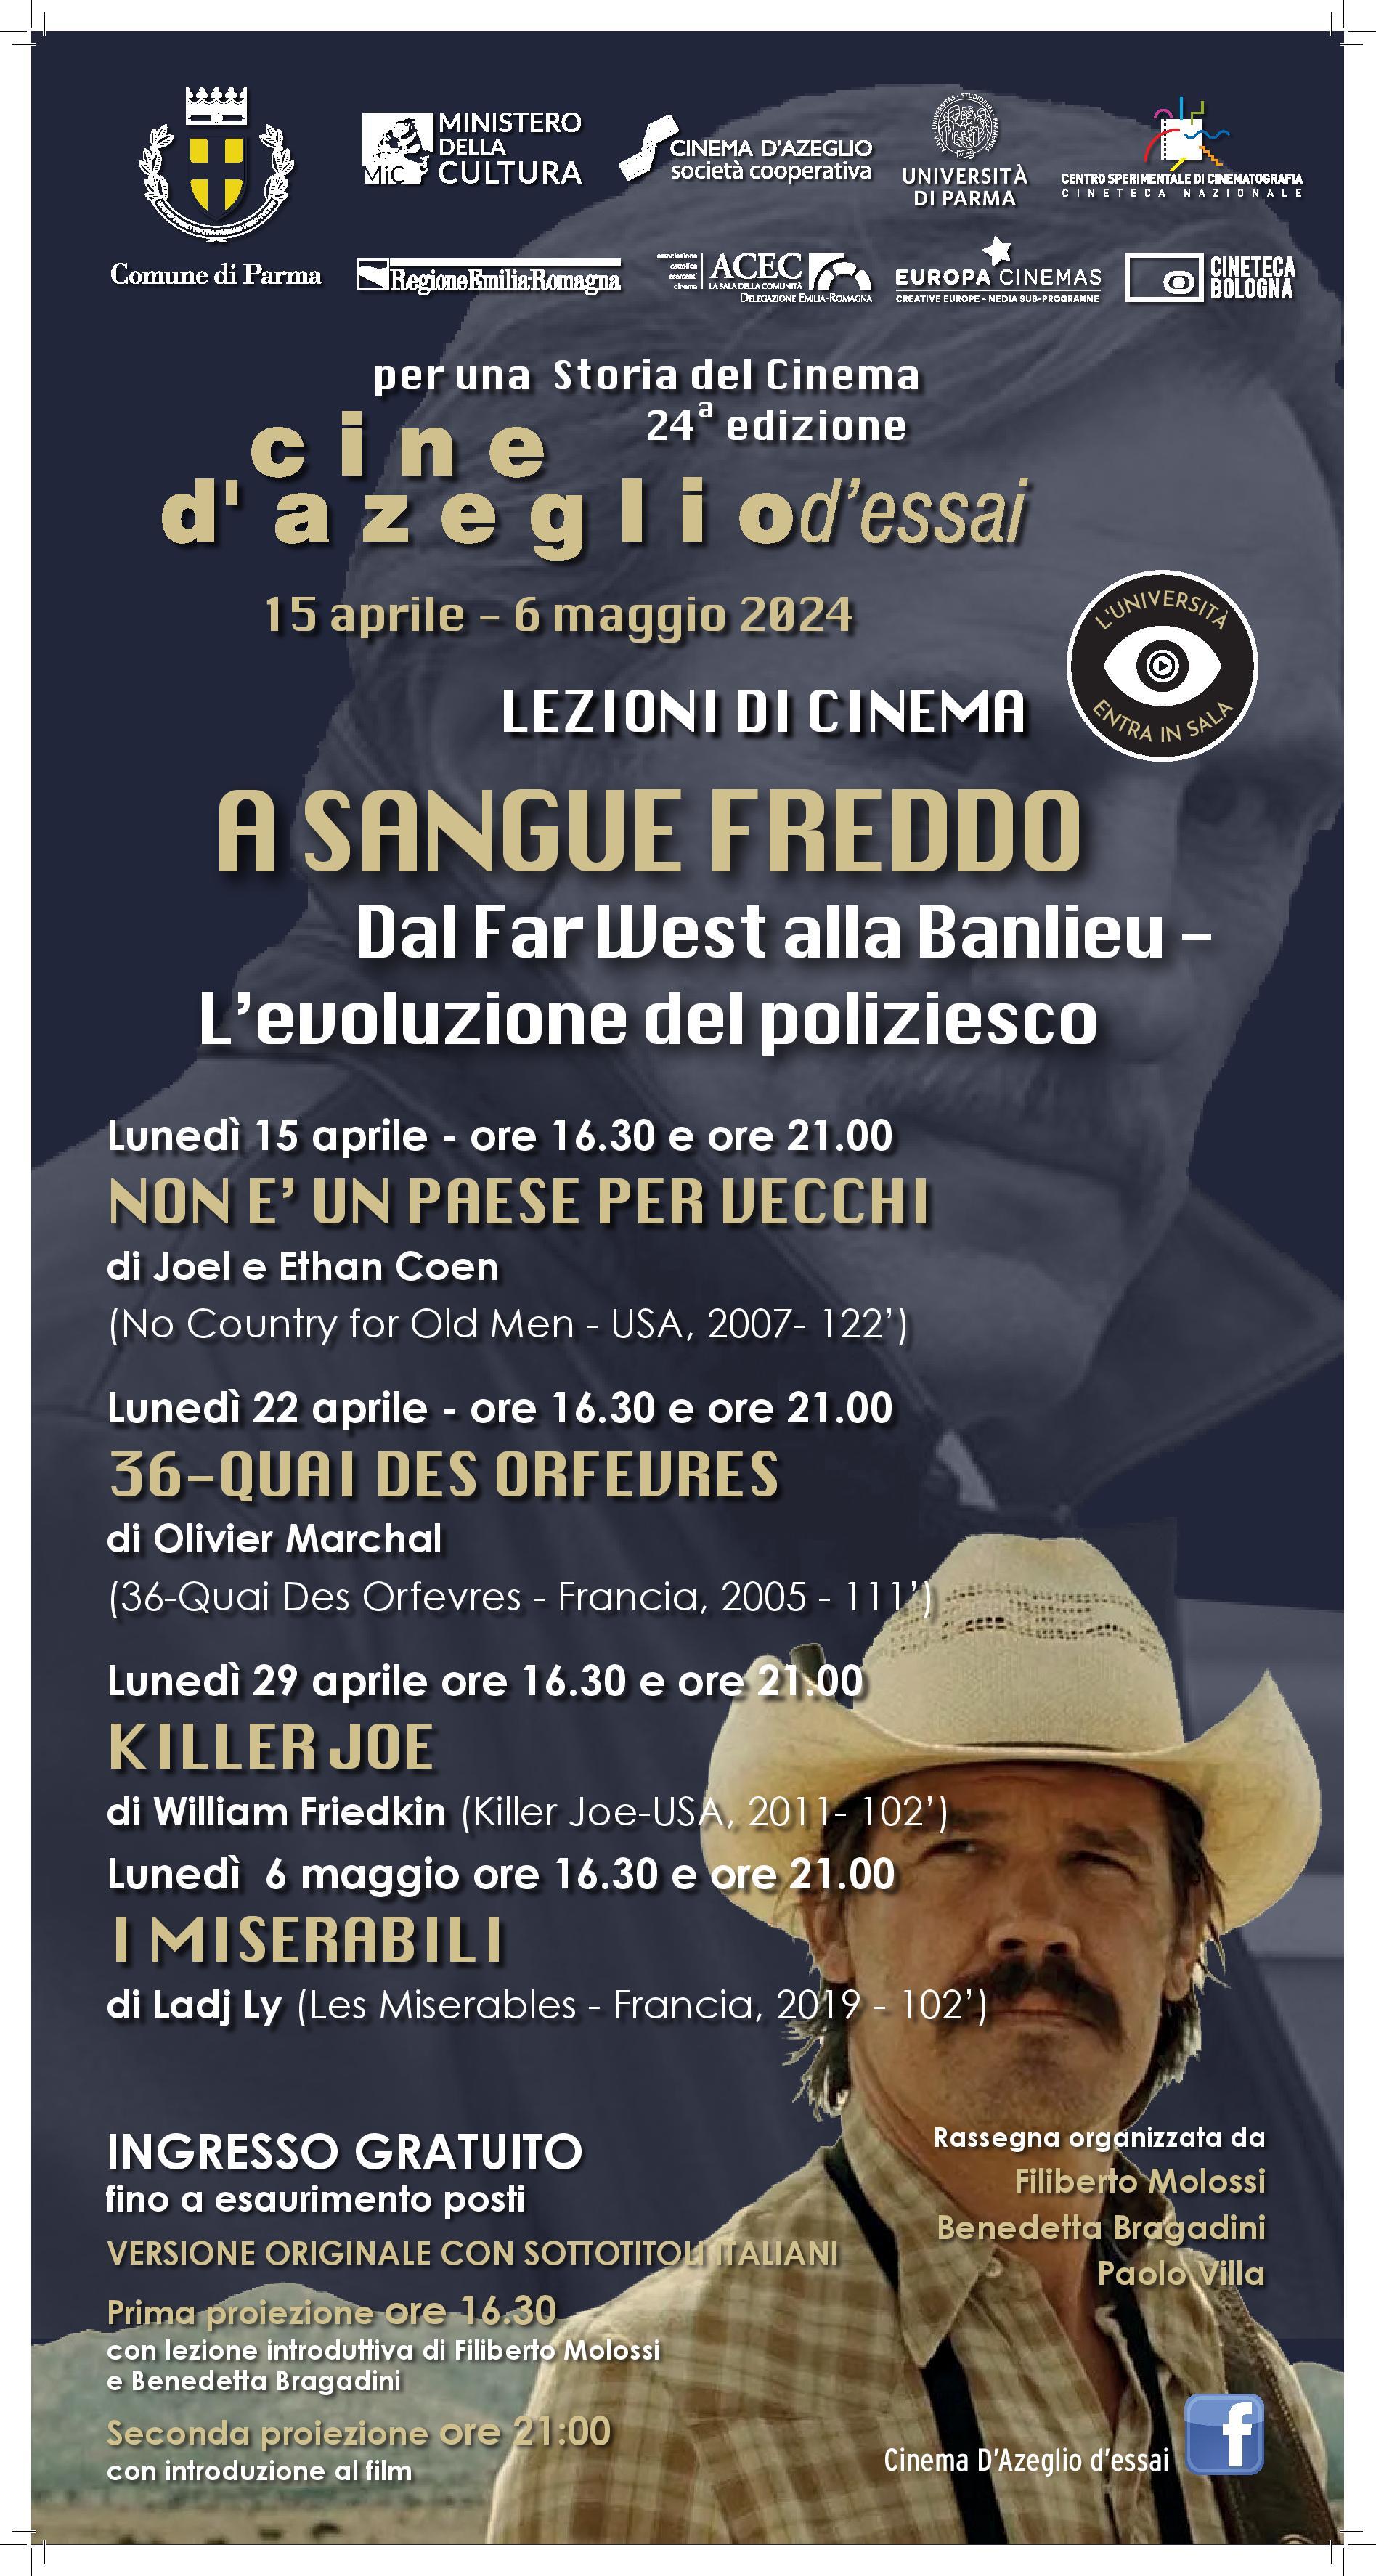 CINE D’AZEGLIOD’ESSAI    PER UNA  STORIA  DEL CINEMA (24° edizione)  L'UNIVERSITA' ENTRA IN SALA - LEZIONI DI CINEMA